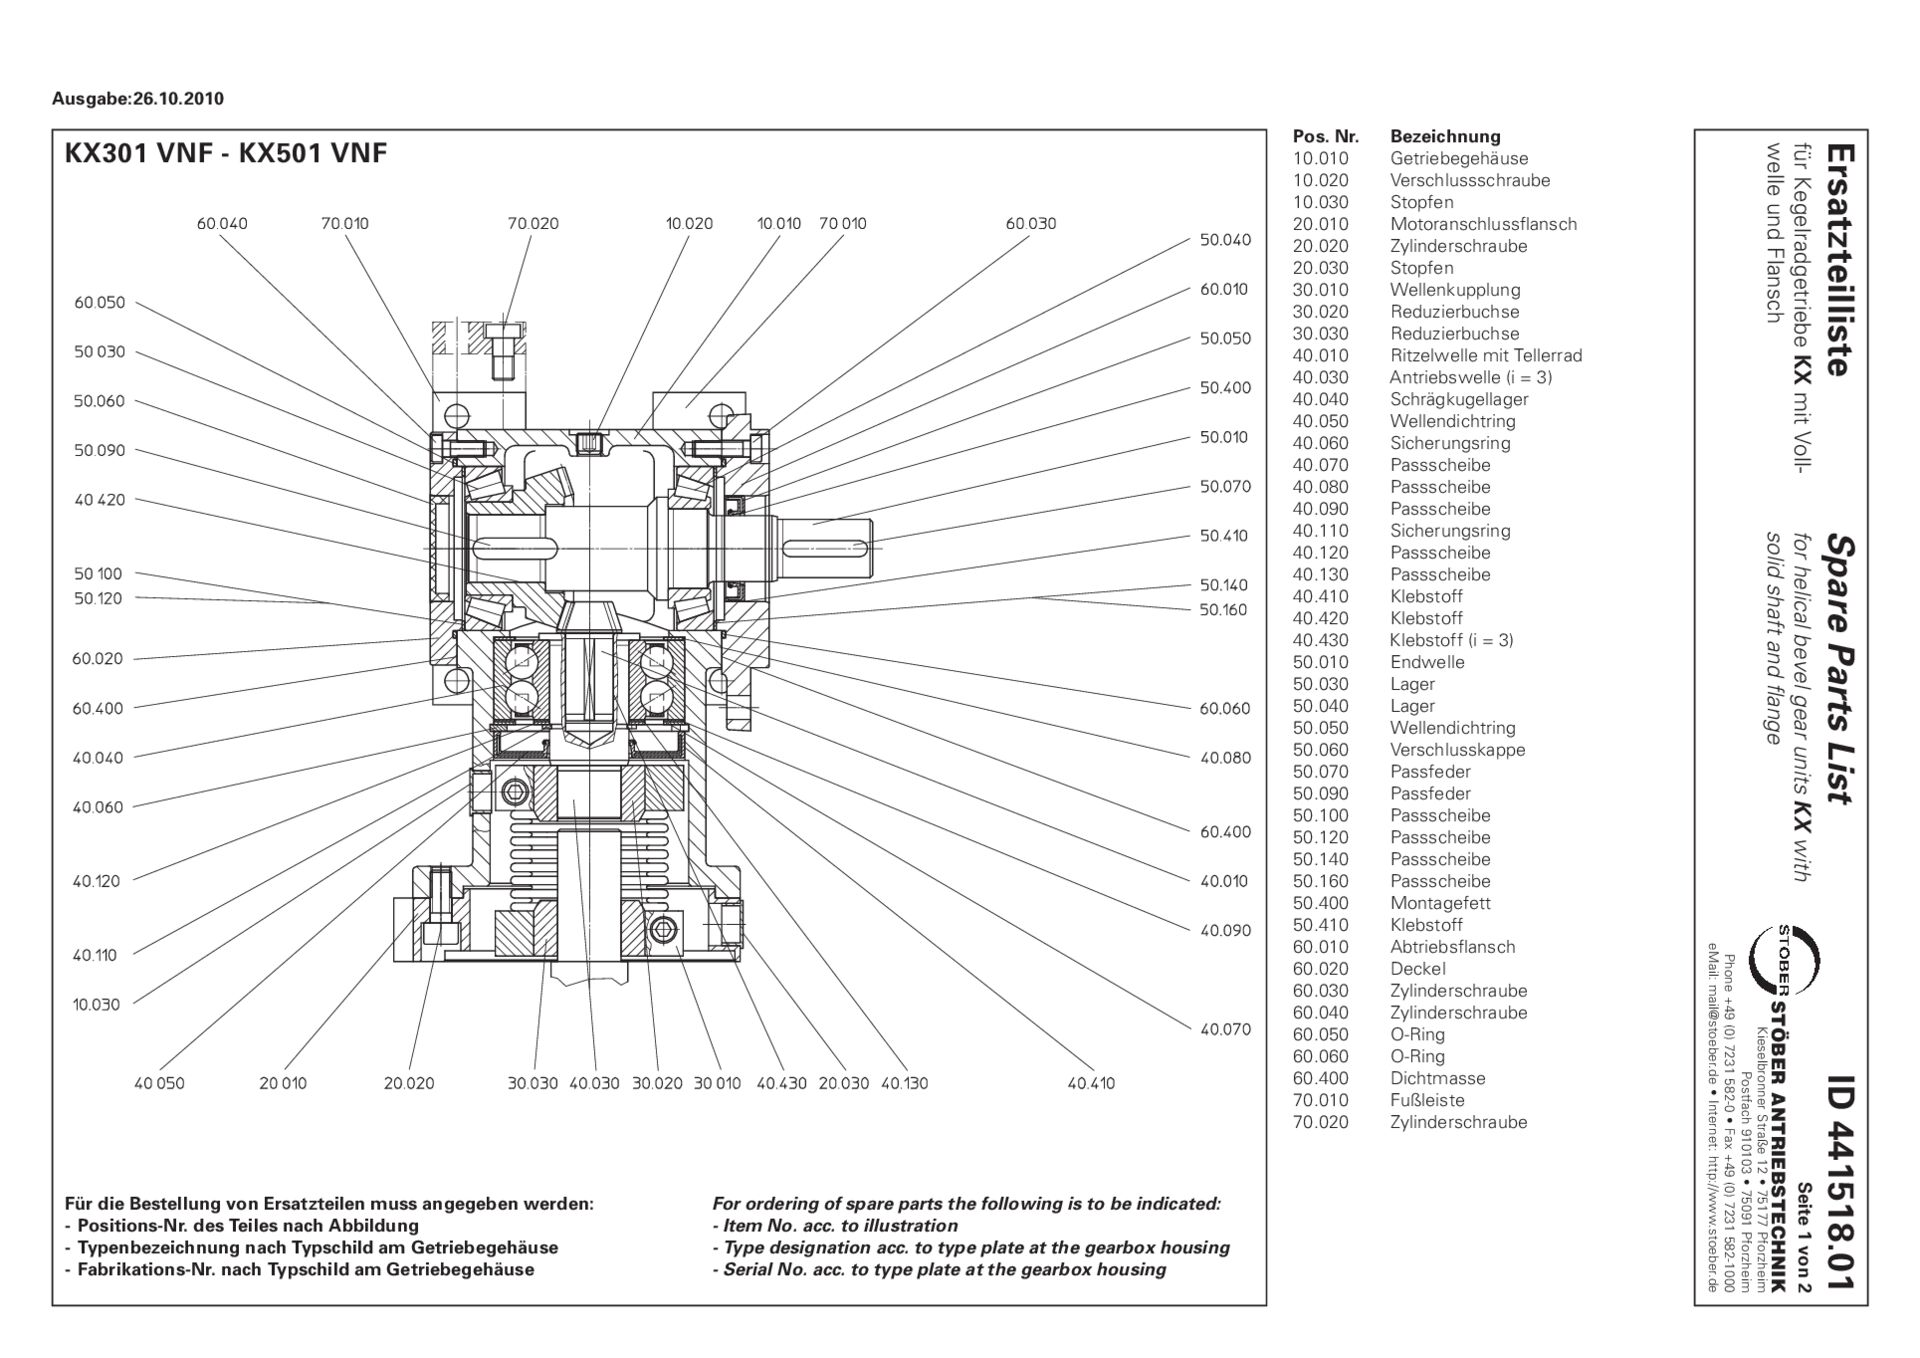 Replacement parts list helical bevel gear units KX301 KX401 KX501 VNF